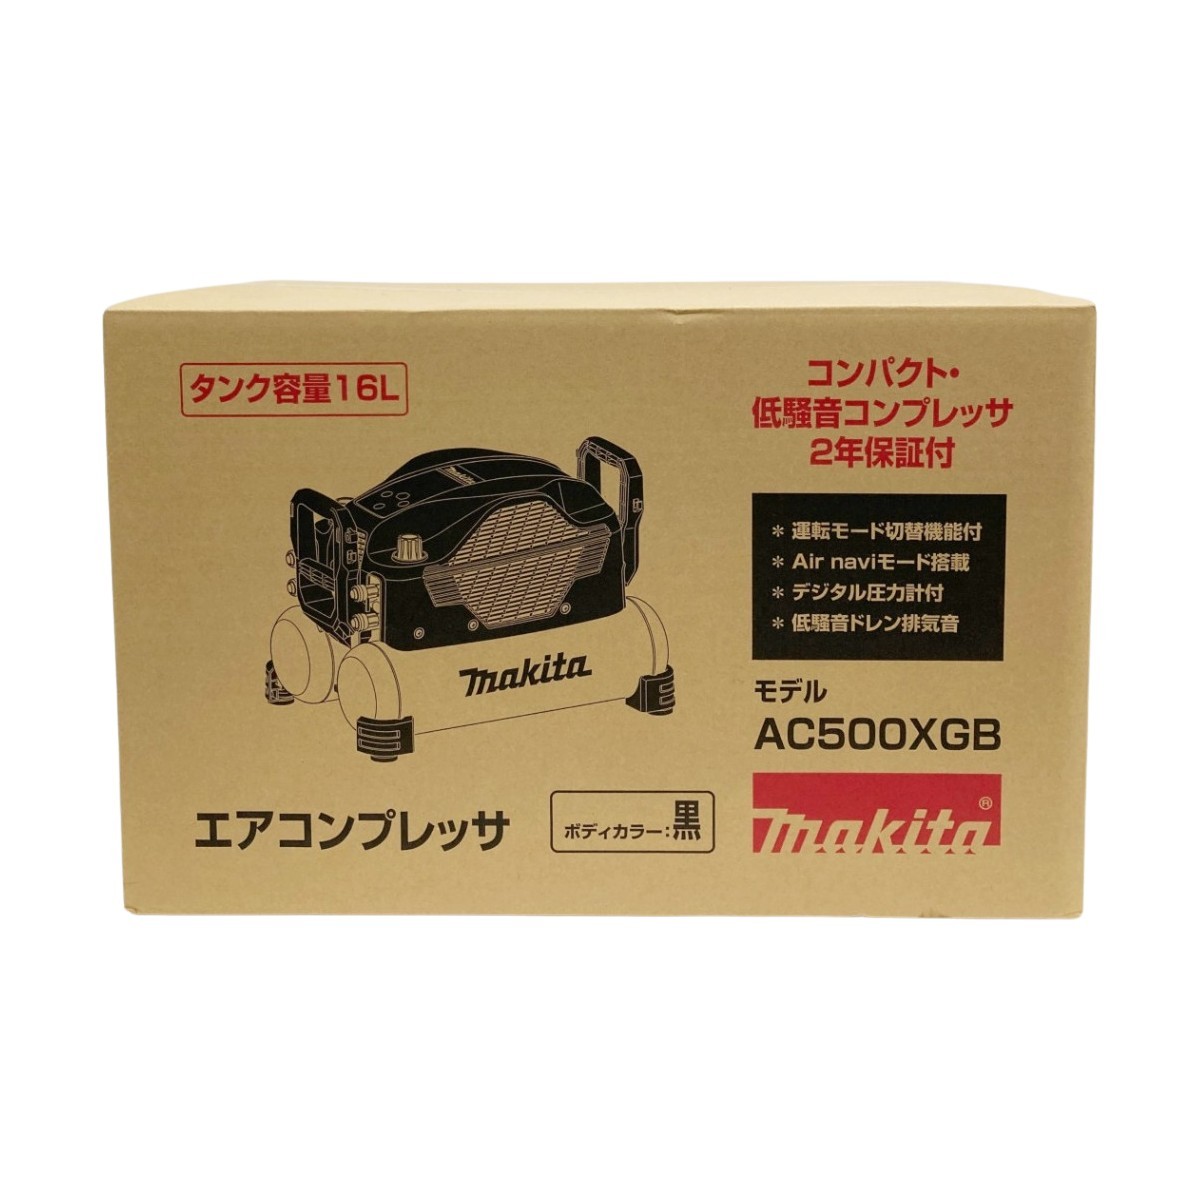 00 MAKITA Makita воздушный компрессор компрессор AC500XGB нераспечатанный товар не использовался 